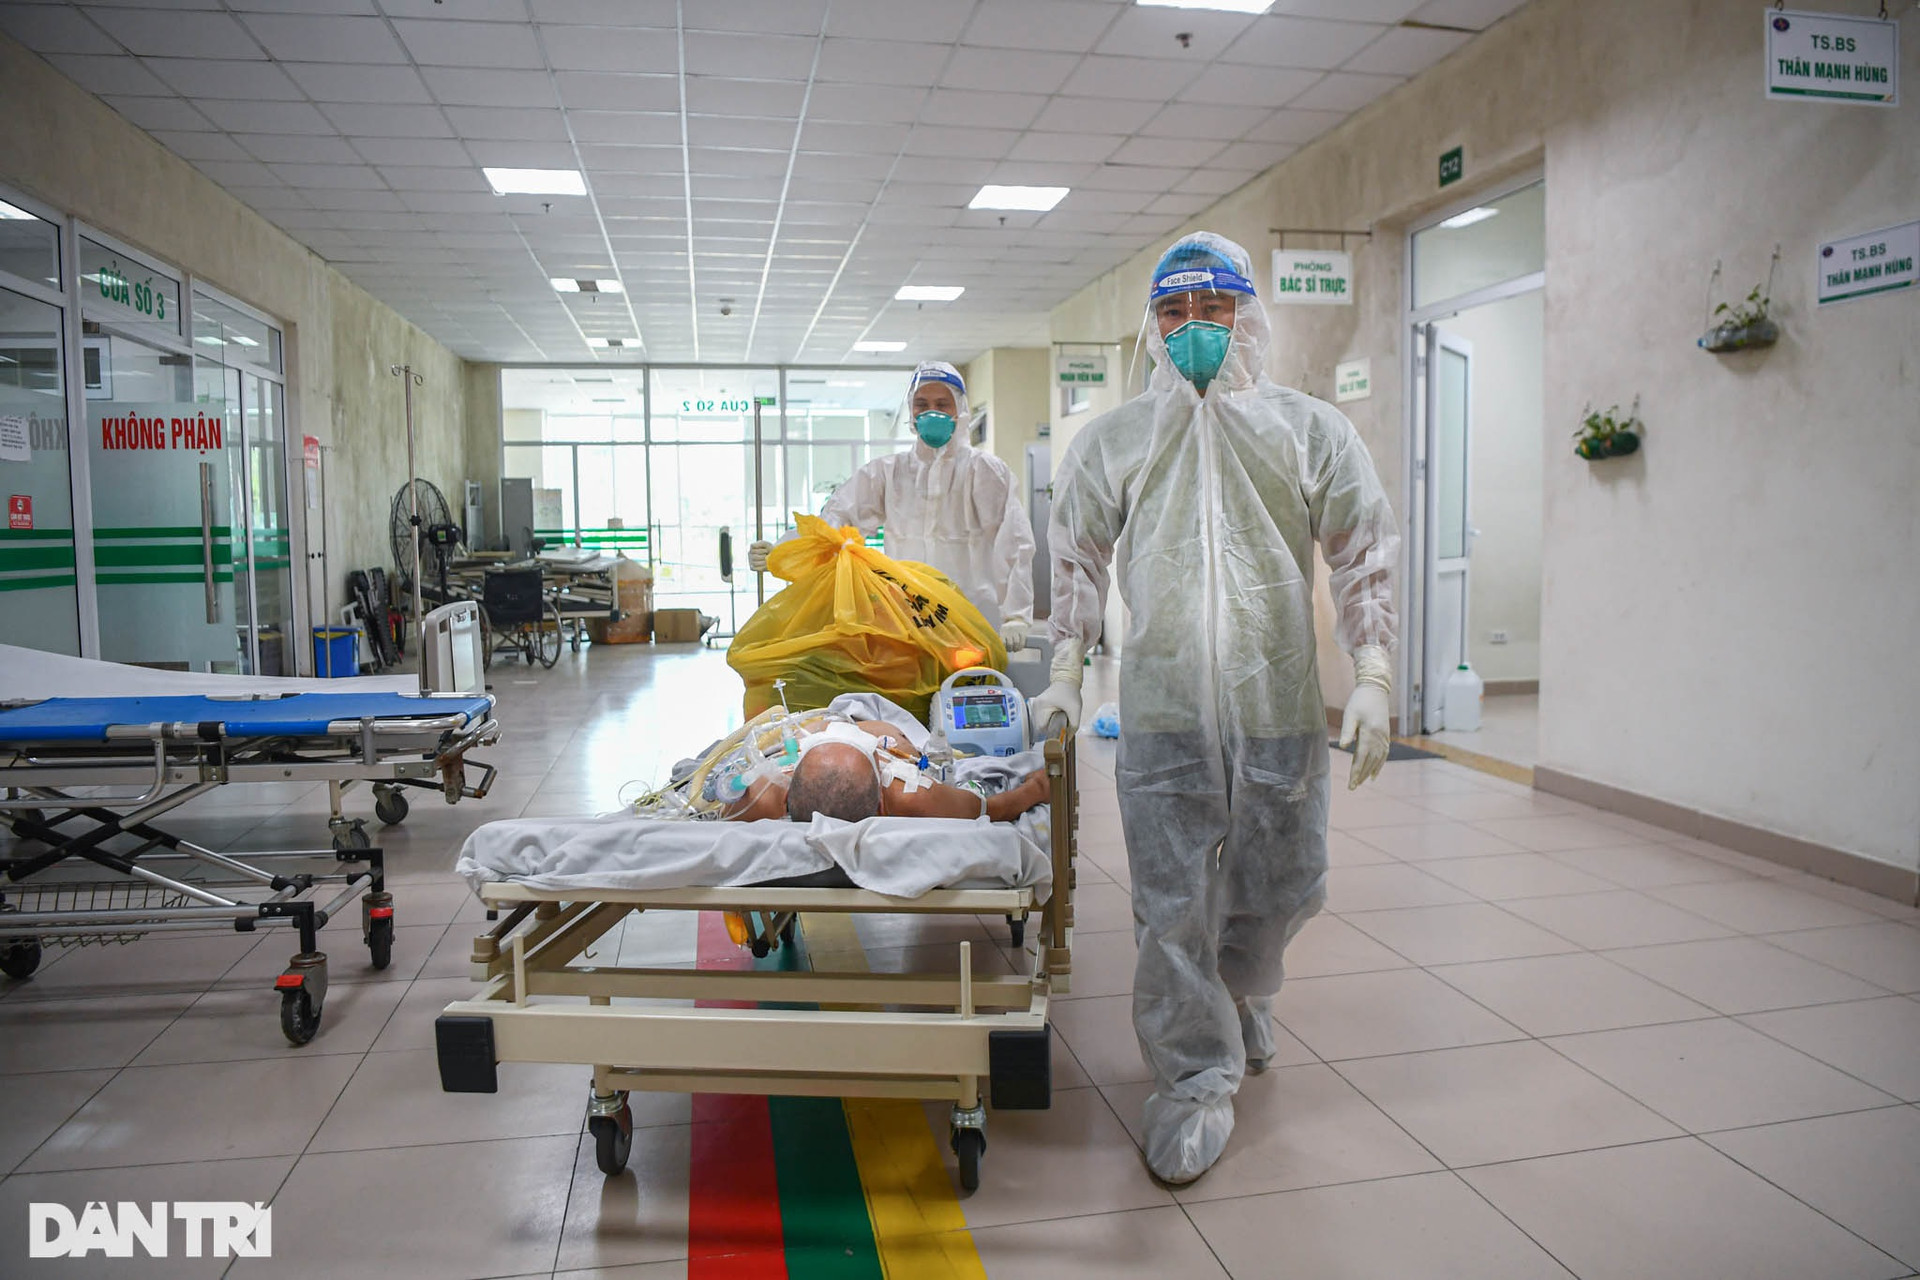 Một ngày trong khu điều trị bệnh nhân Covid-19 triệu chứng nặng ở Hà Nội - 18